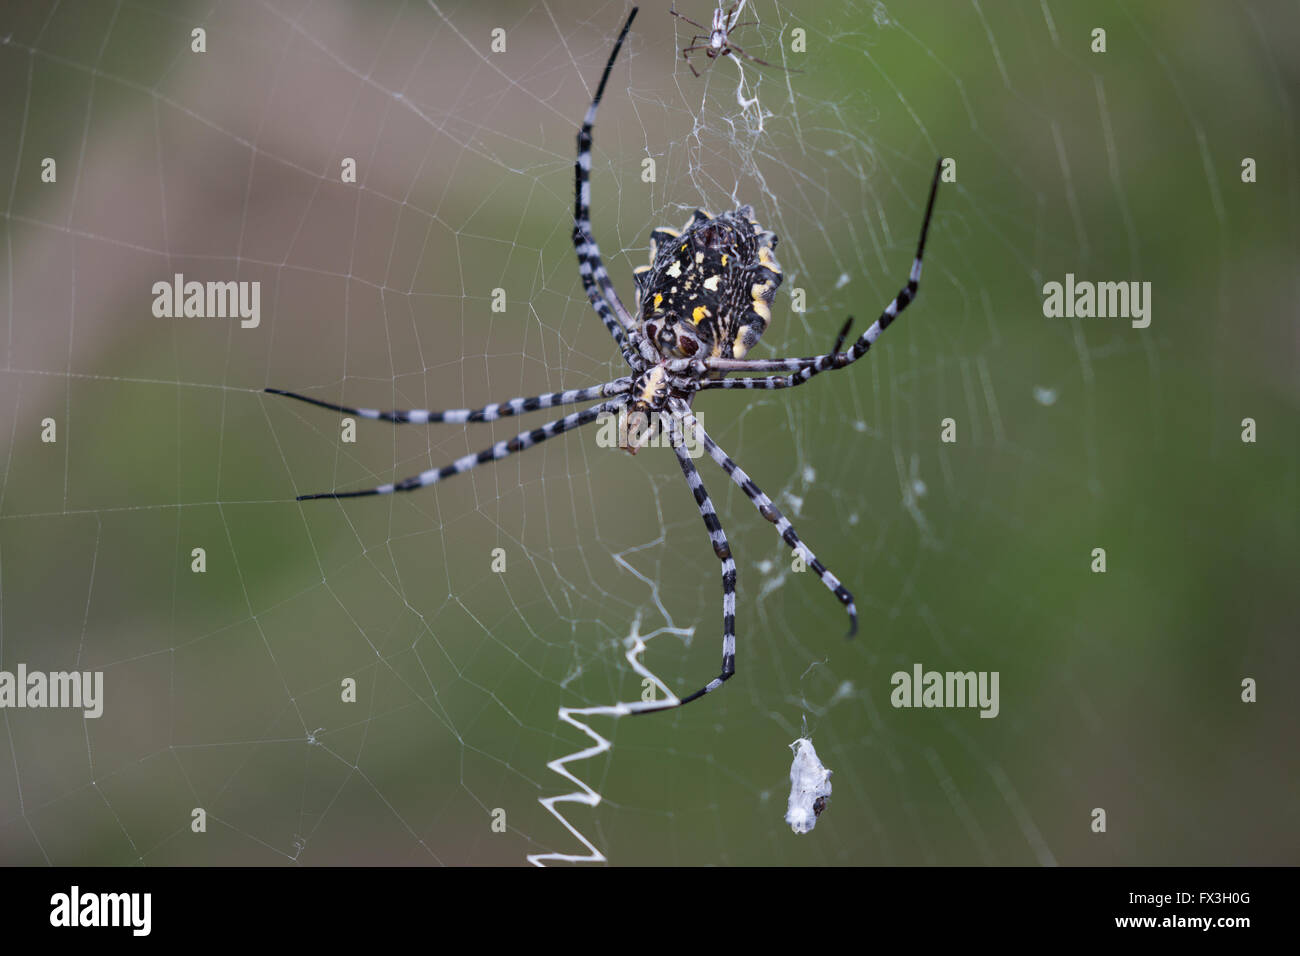 Jaune, blanc et noir l'araignée tisse une toile d'orb Banque D'Images